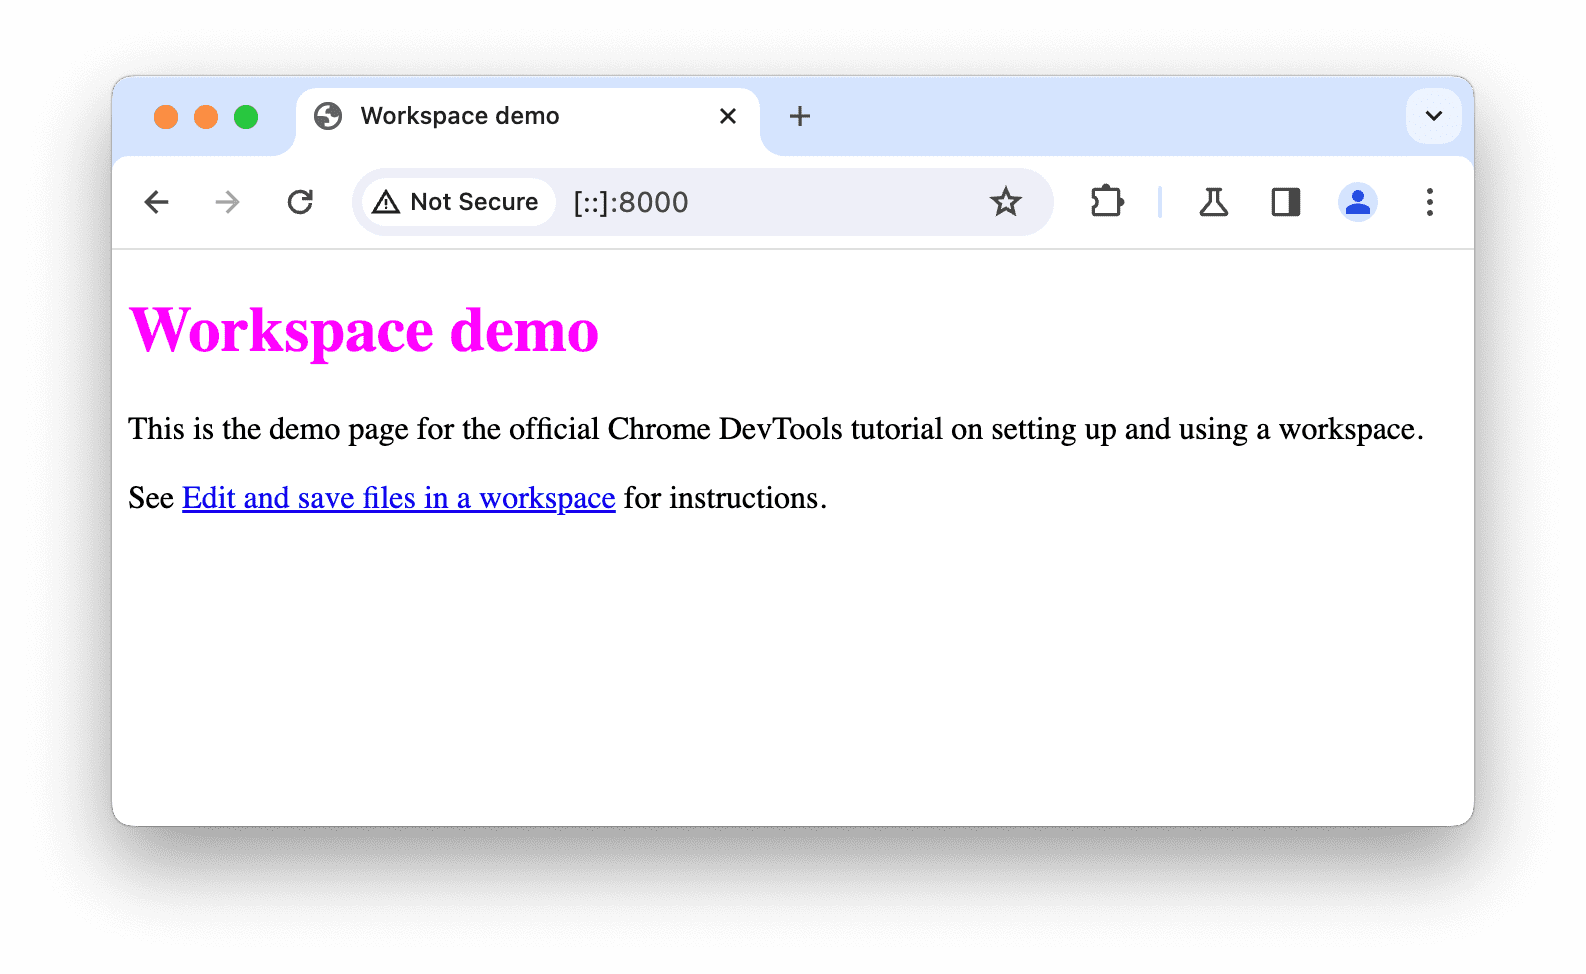 Локально размещенная демонстрационная страница открылась в Chrome.